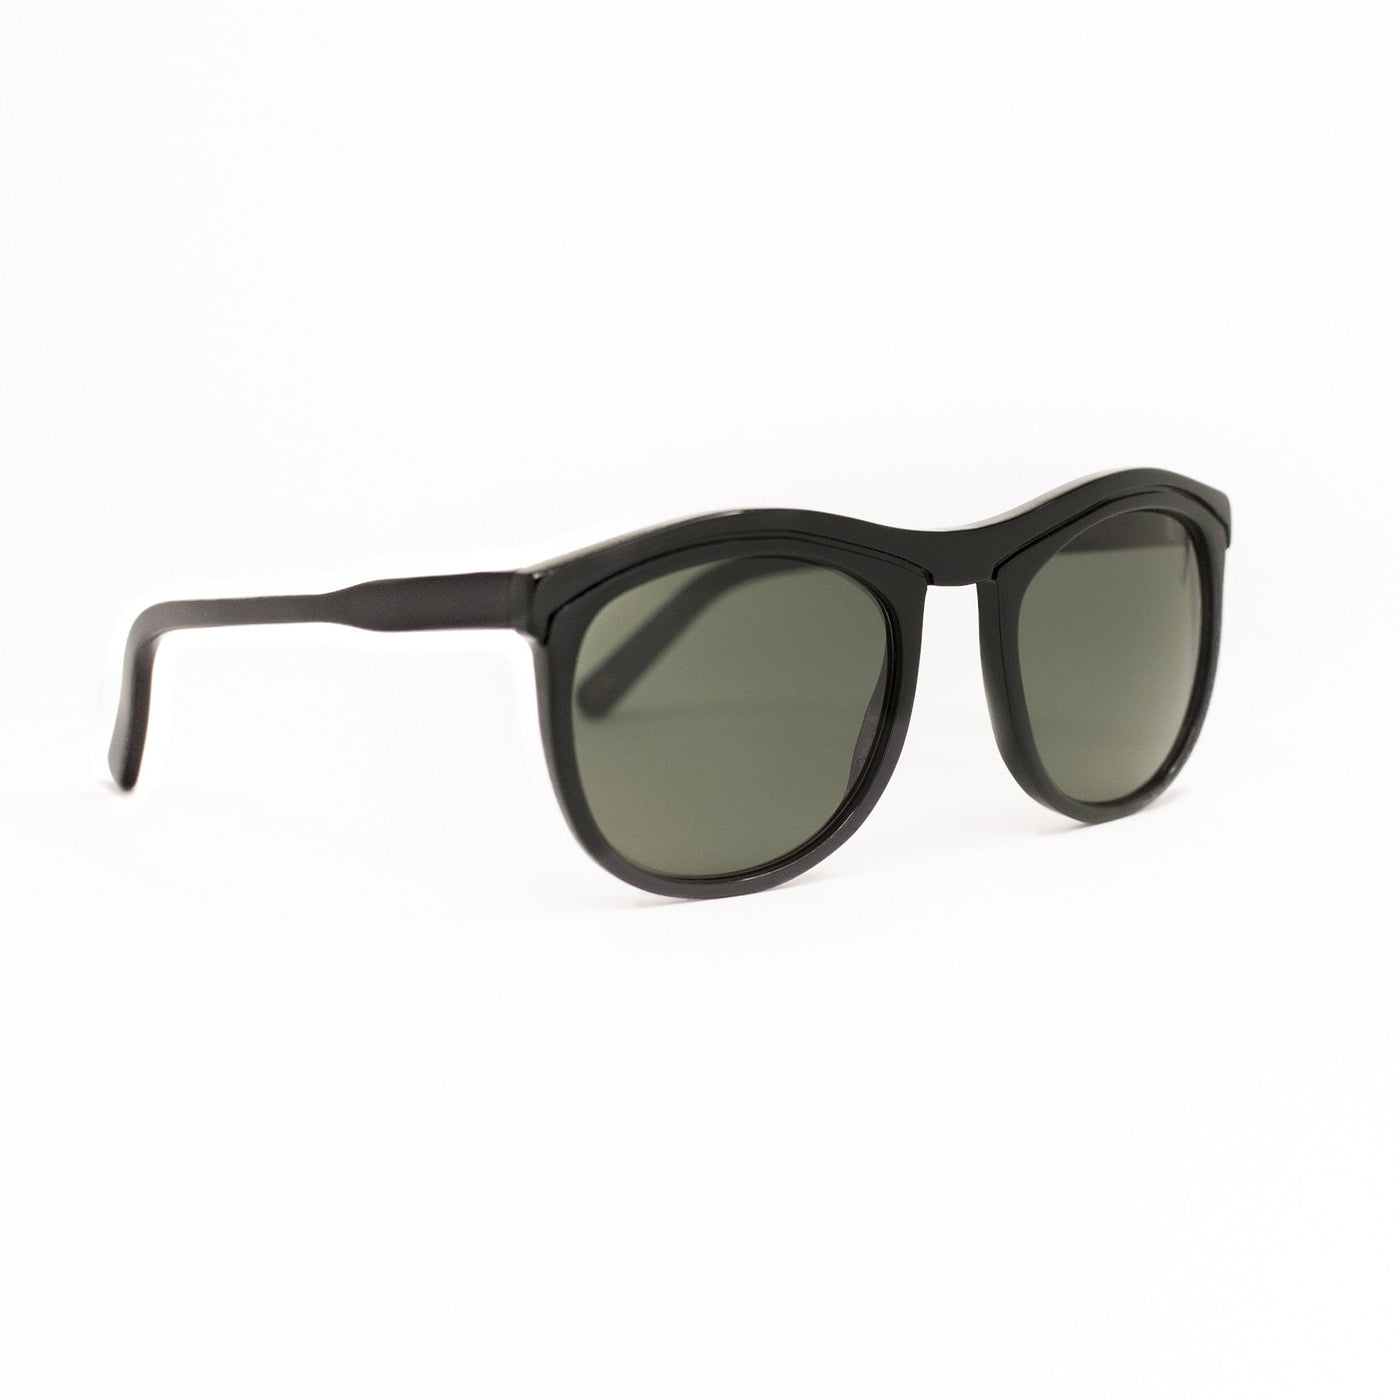 Sunglasses OA XV 02